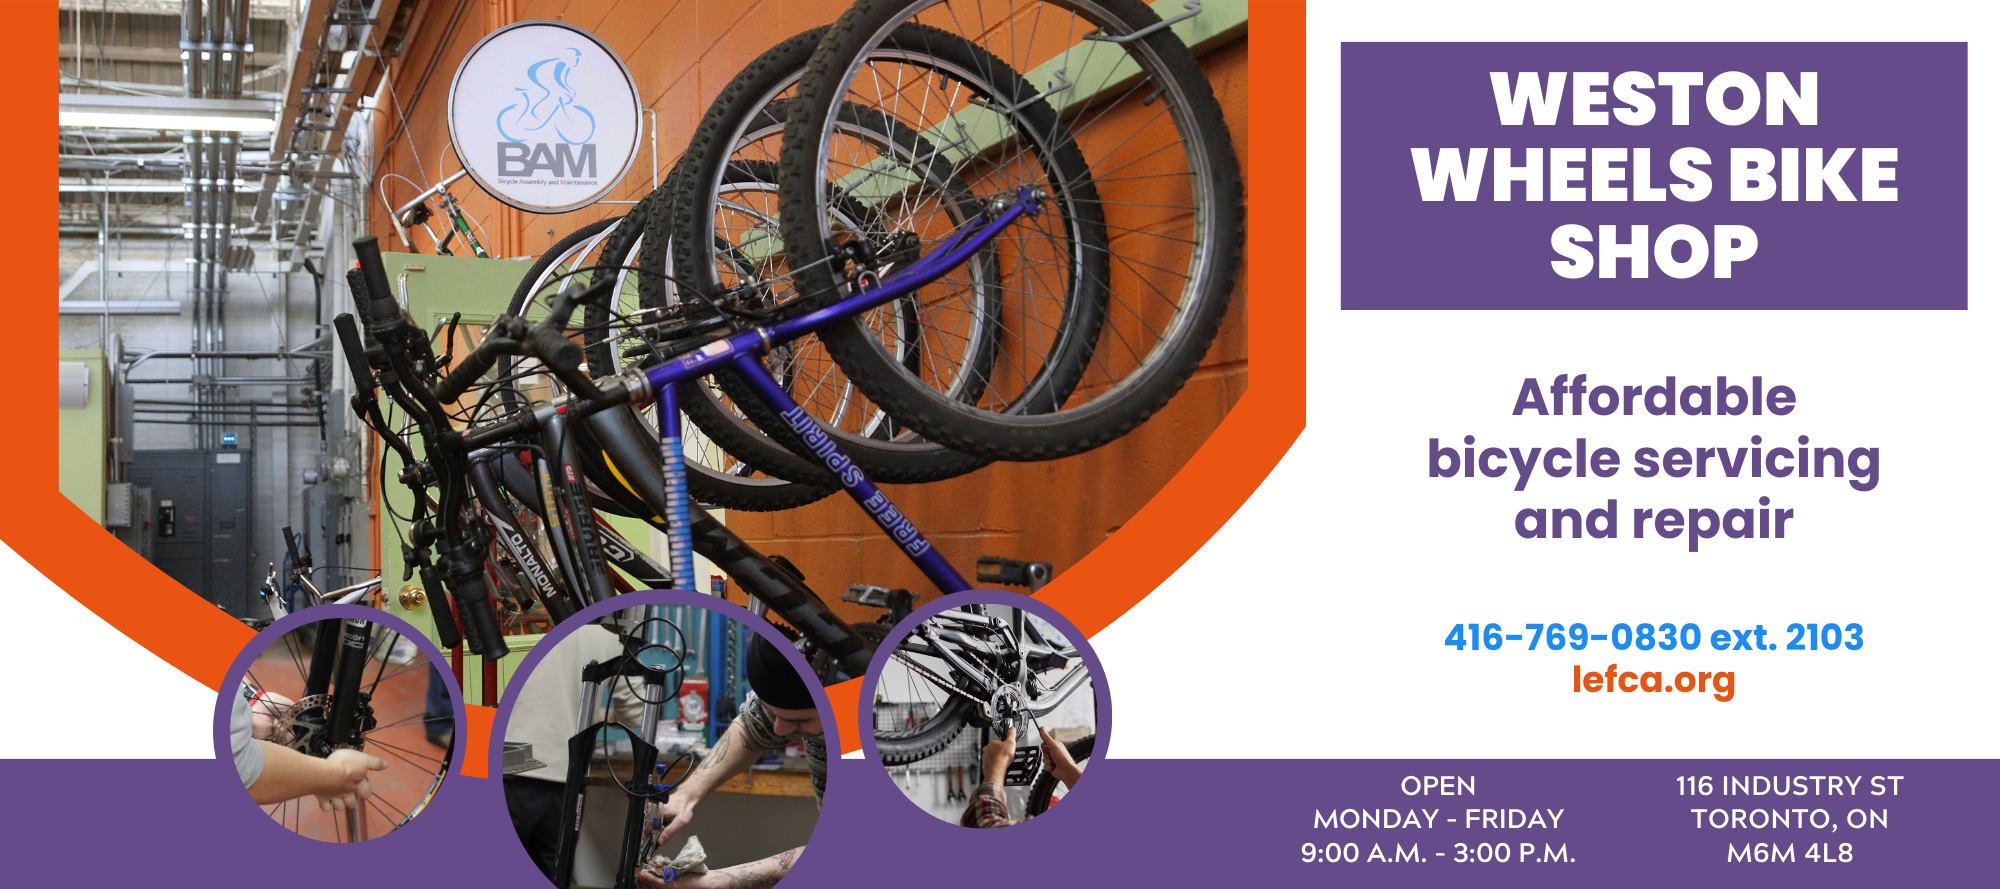 Weston Wheels Bike Shop flyer